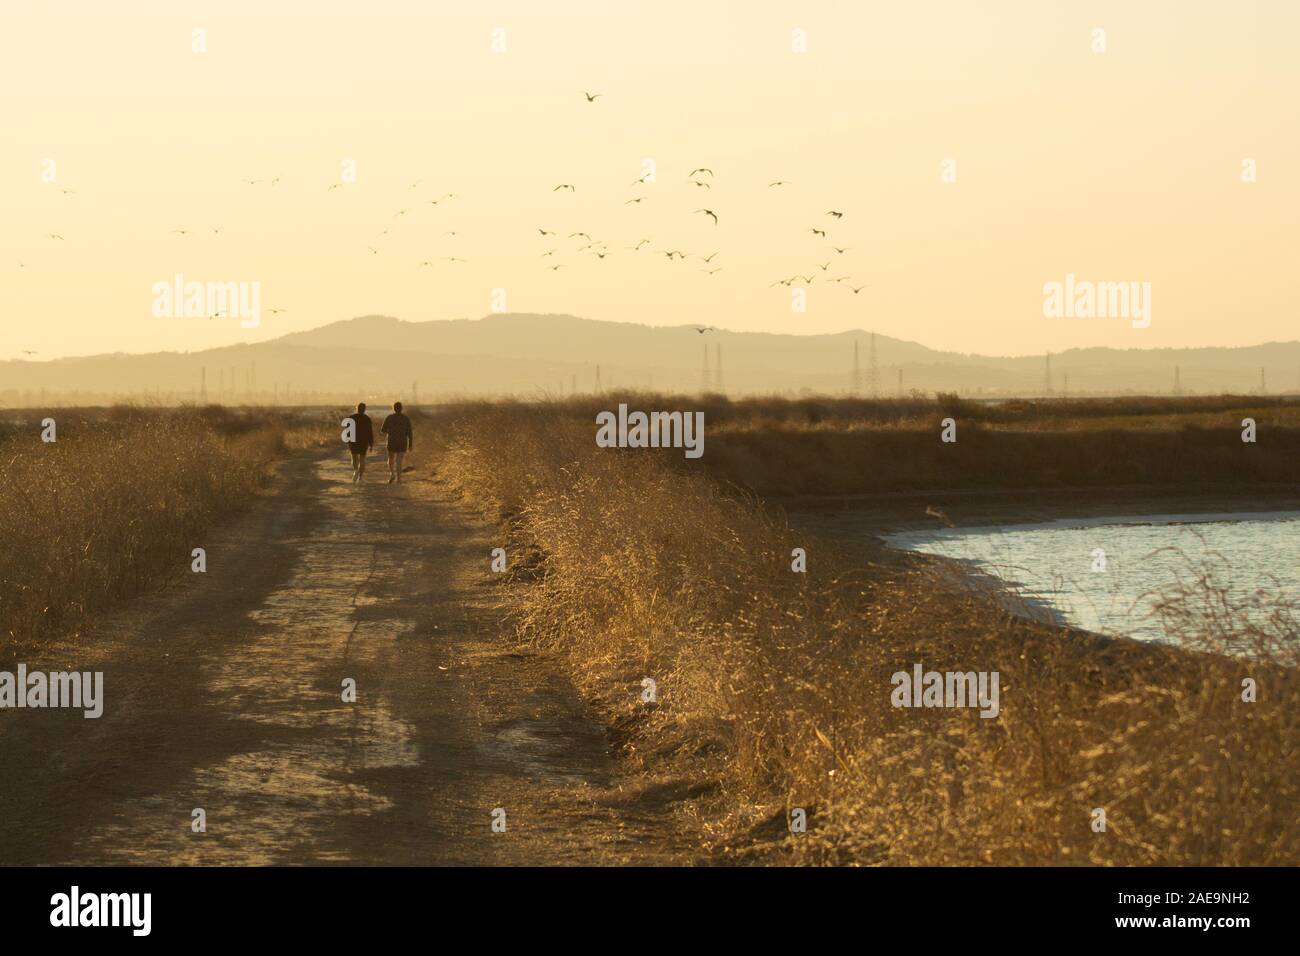 Couple marche loin de photographe sur le sentier de terre à côté de San Francisco Bay, au crépuscule, le soleil se couche derrière les montagnes et les oiseaux volent au-dessus de la tête. Banque D'Images